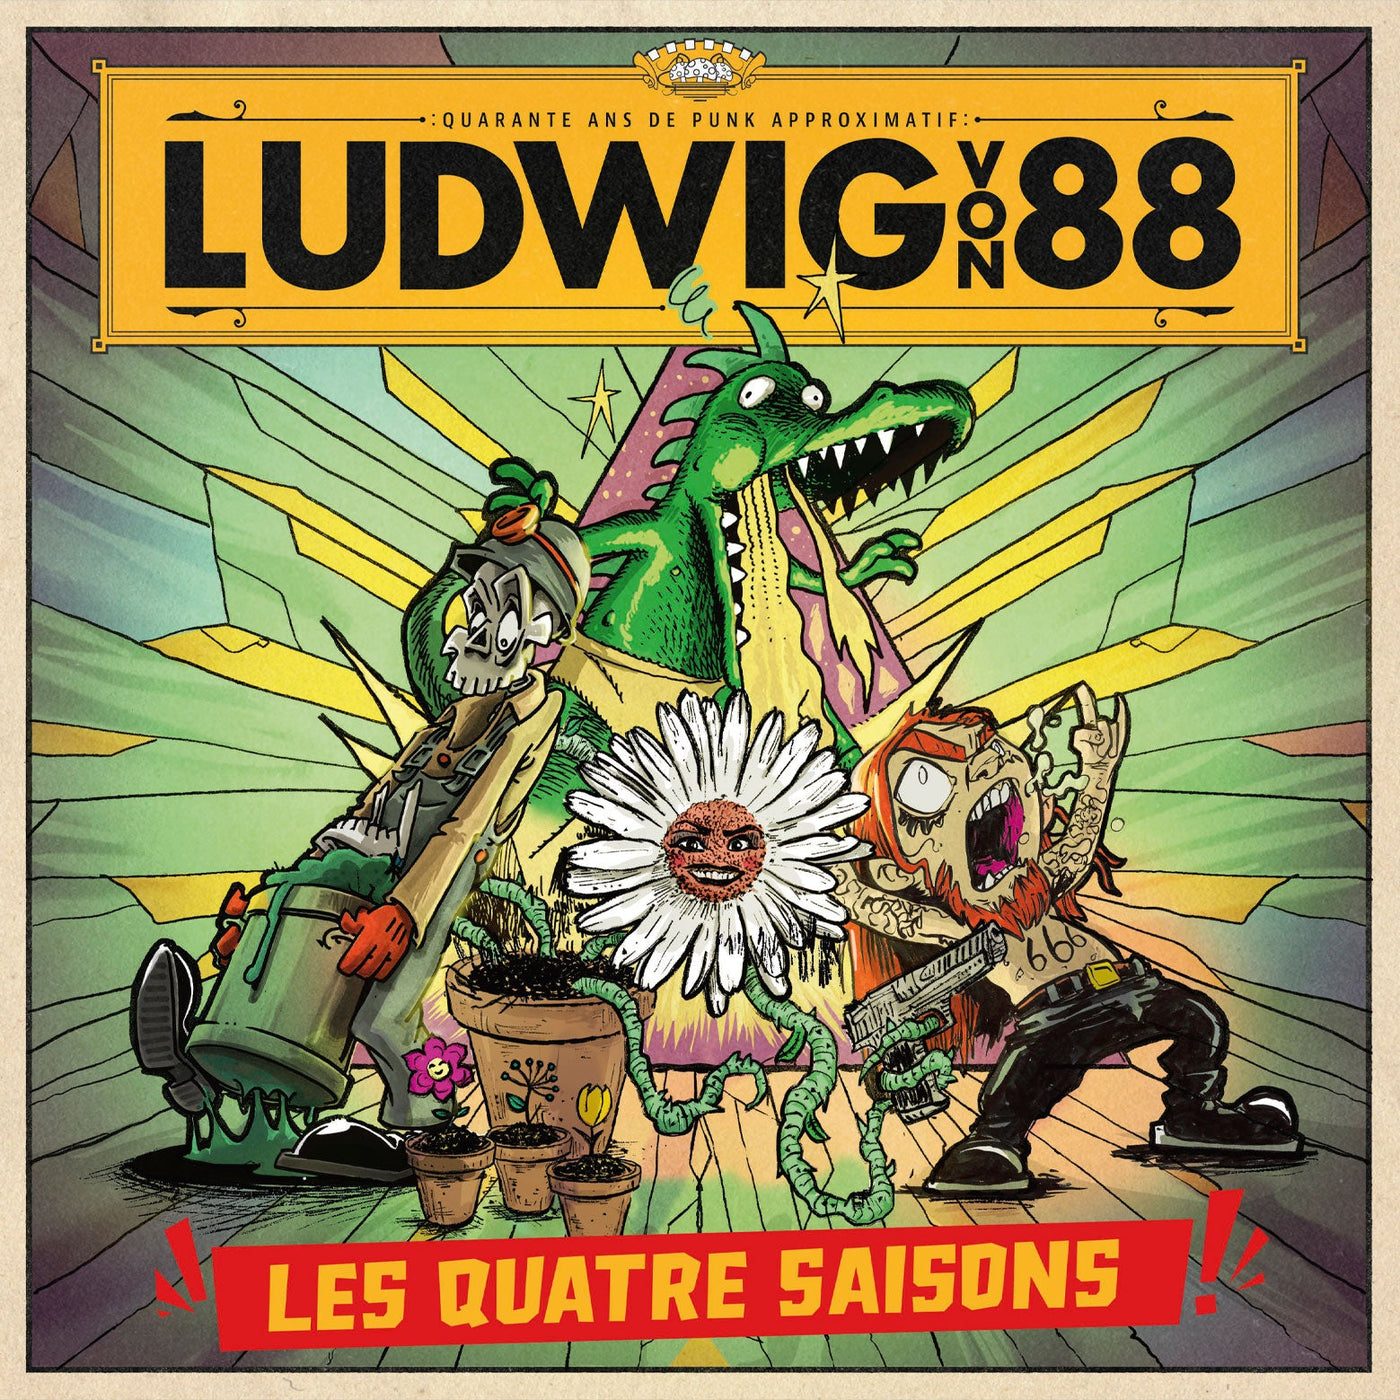 Ludwig Von 88, coffret 4 vinyles couleurs "les Quatre Saisons" (2023) contenant "l'hiver des cretes", "le printemps du pogo", "l'été du no future", "l'automne de l'anarchie"